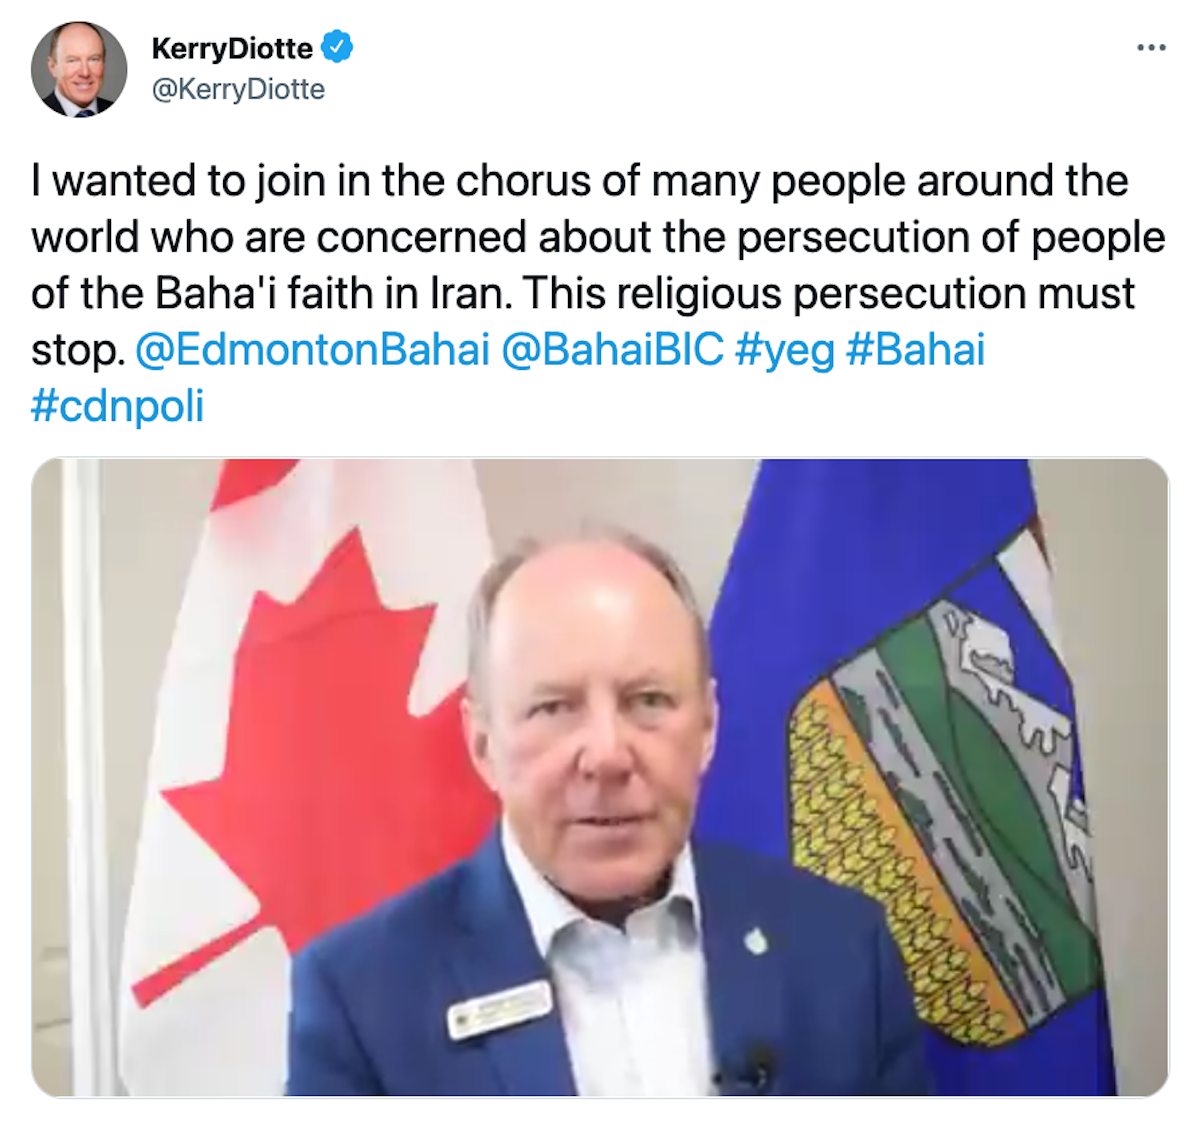 پیام آقای کری دیوت یکی از اعضای پارلمان کانادا در توییتر